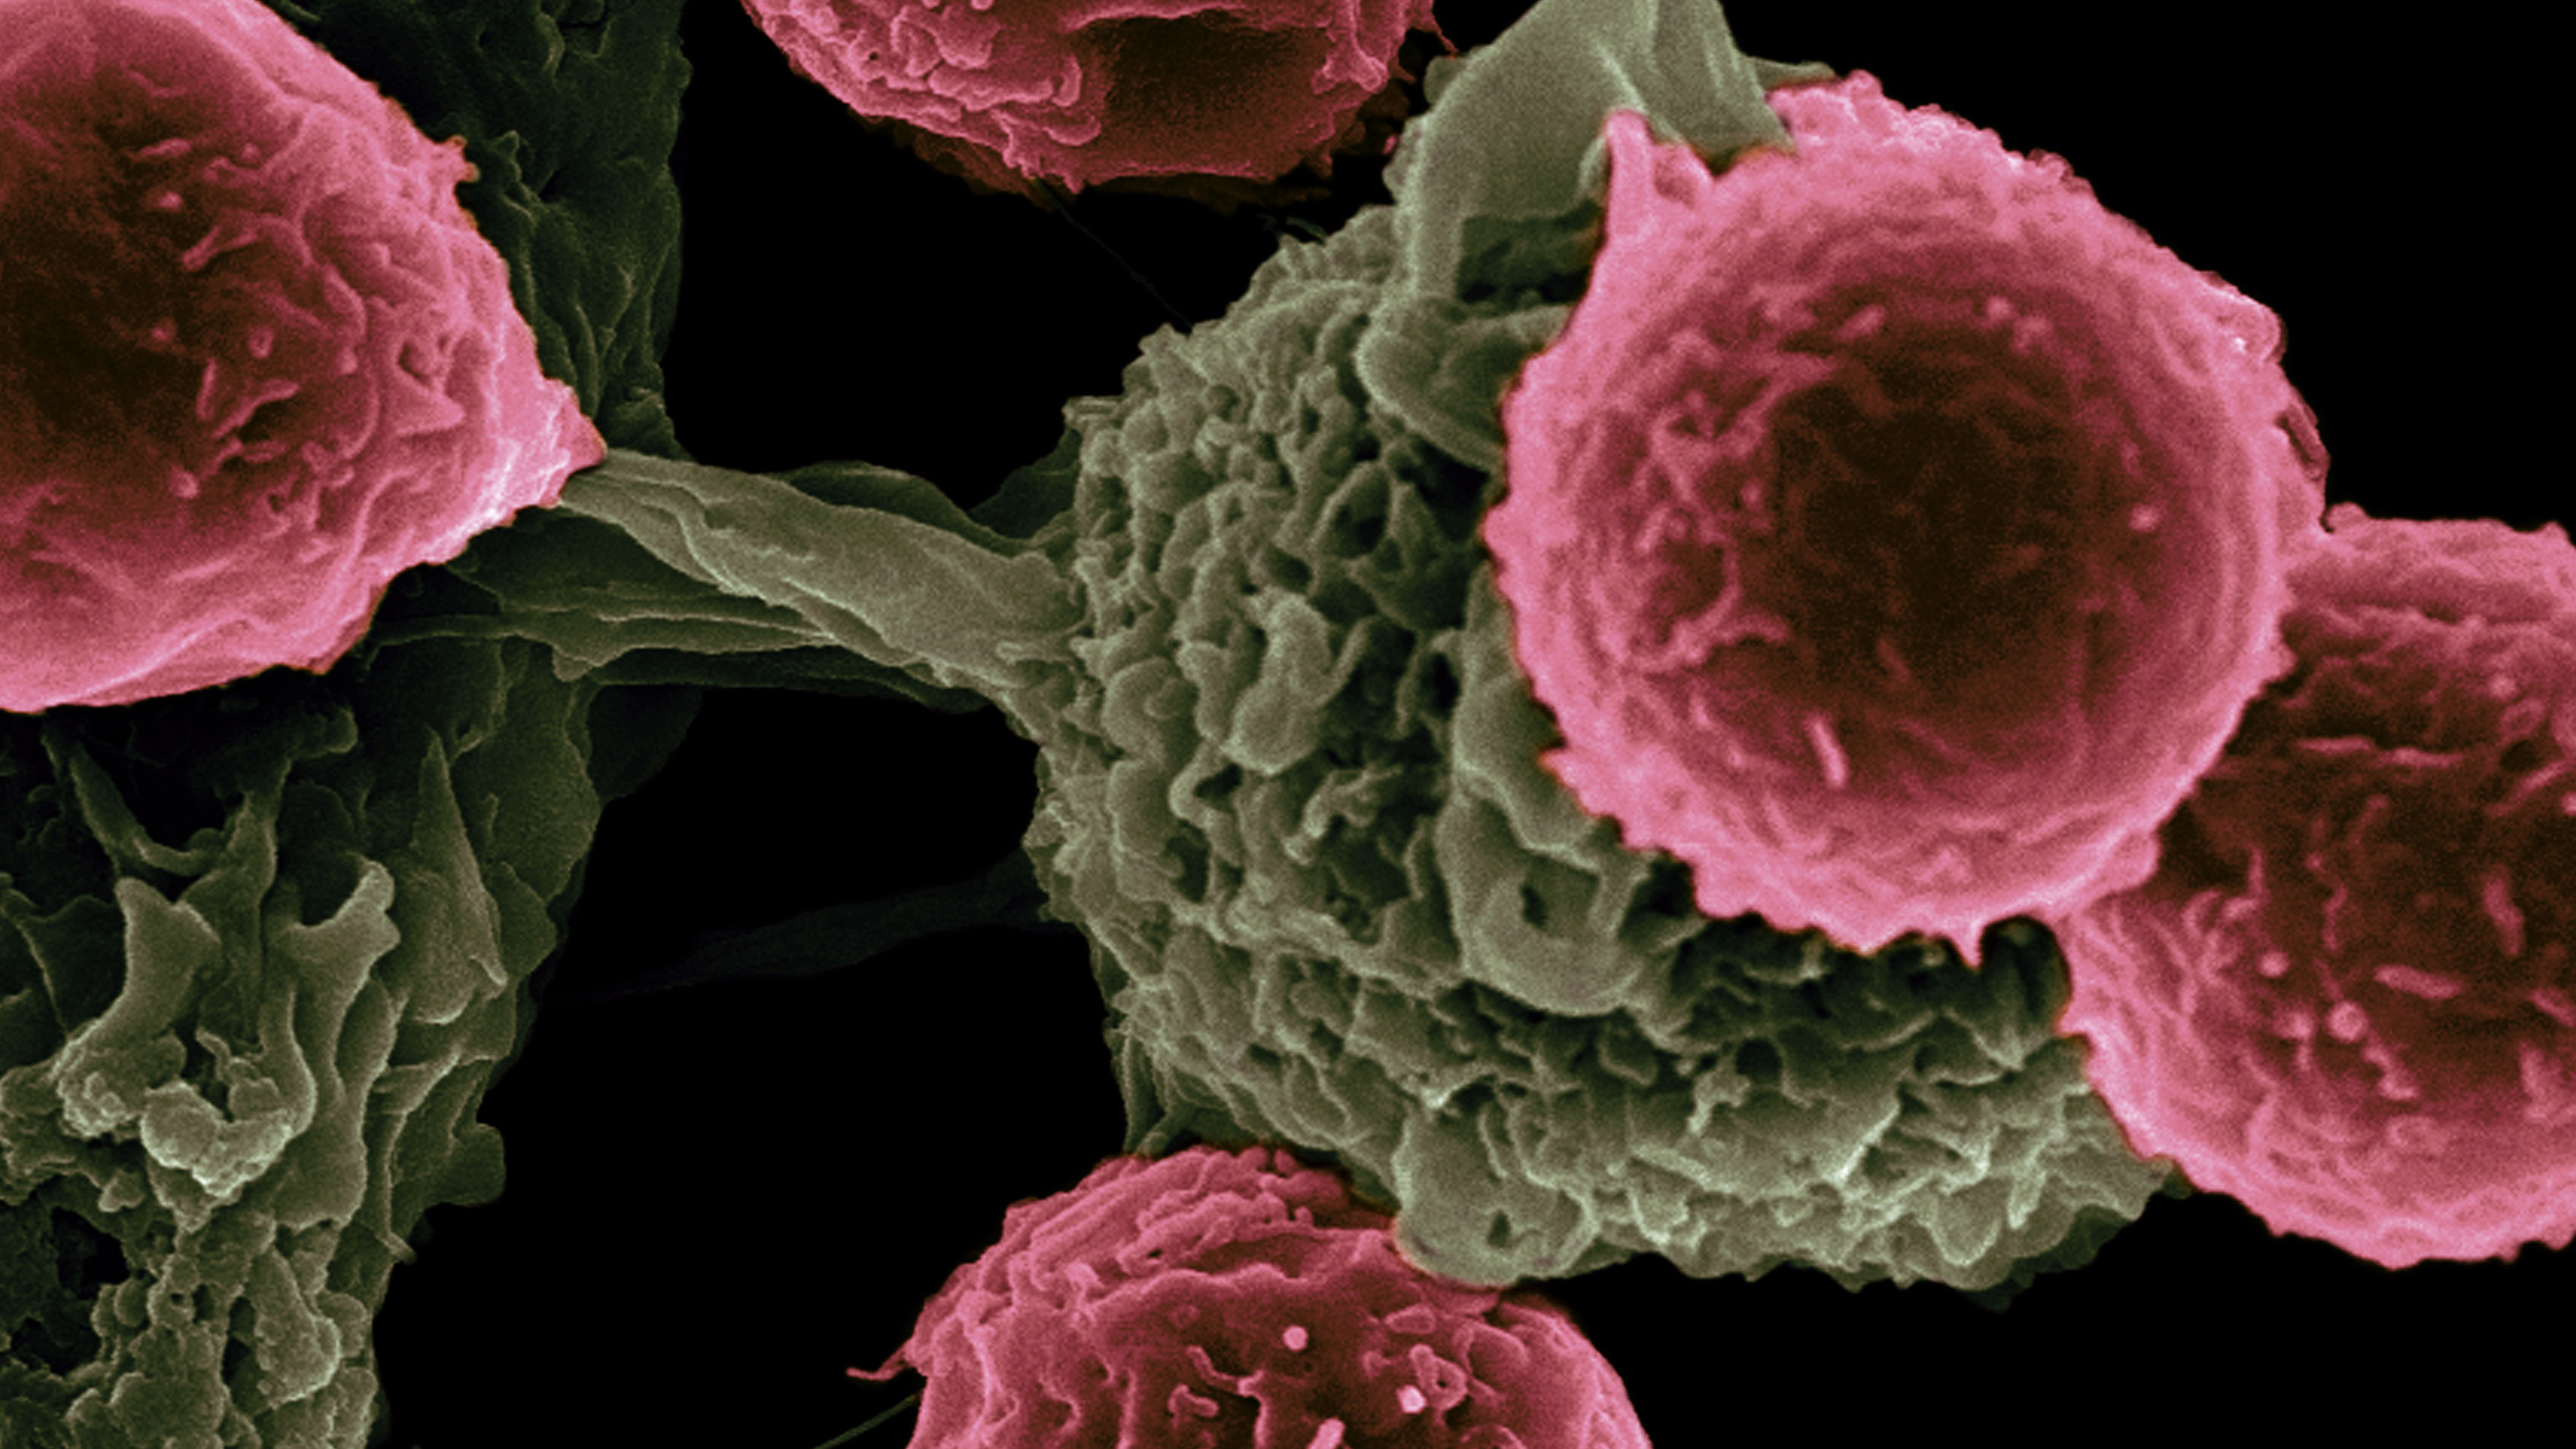 Medical illustration of cancer cells